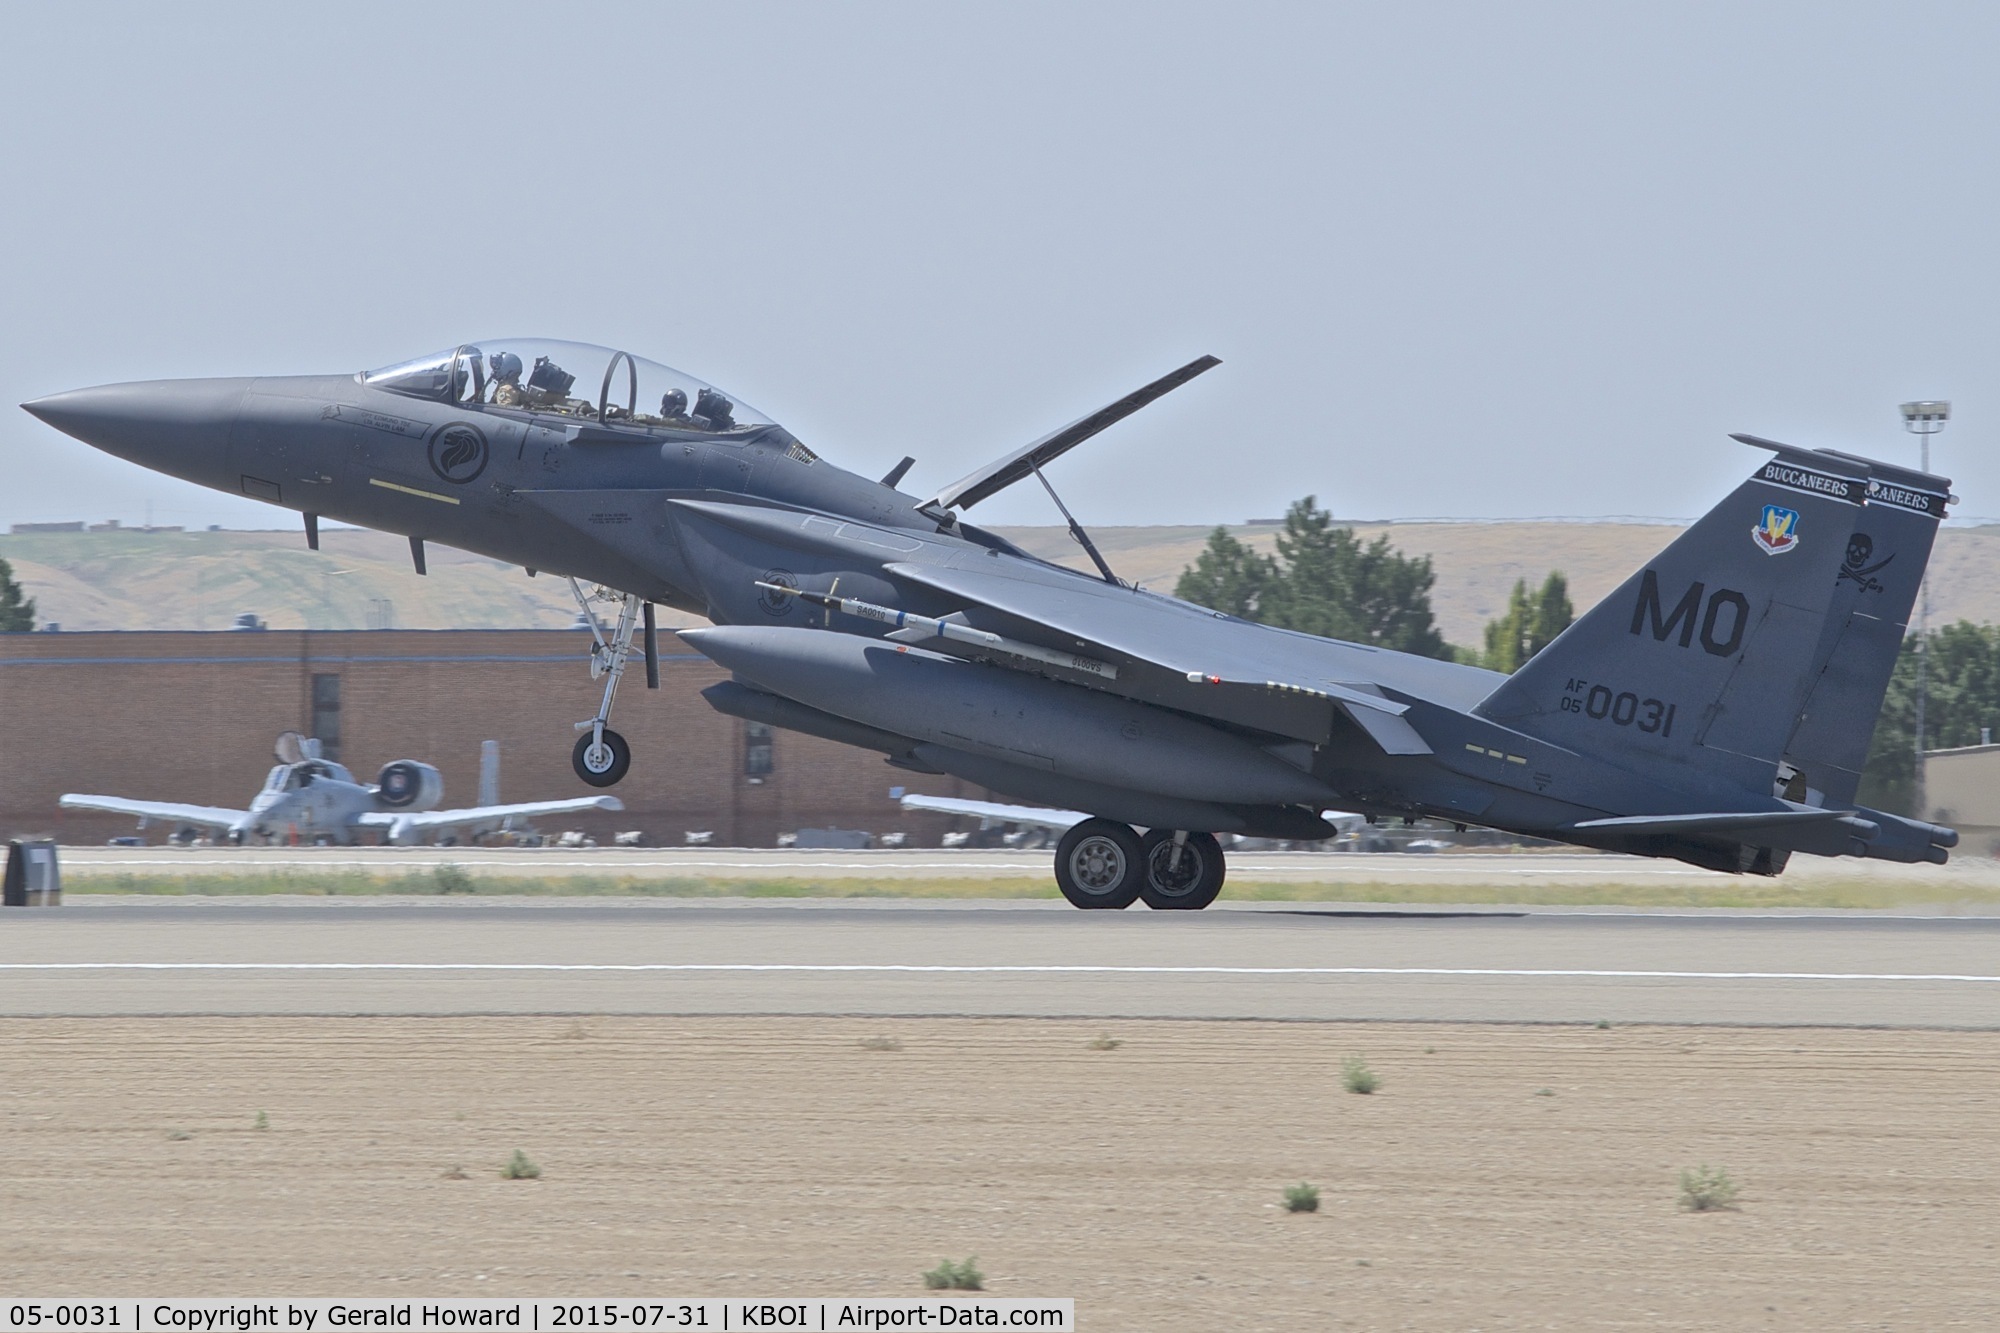 05-0031, 2005 Boeing F-15SG Strike Eagle C/N SG31, Landing RWY 10L. 428th Fighter Sq. 